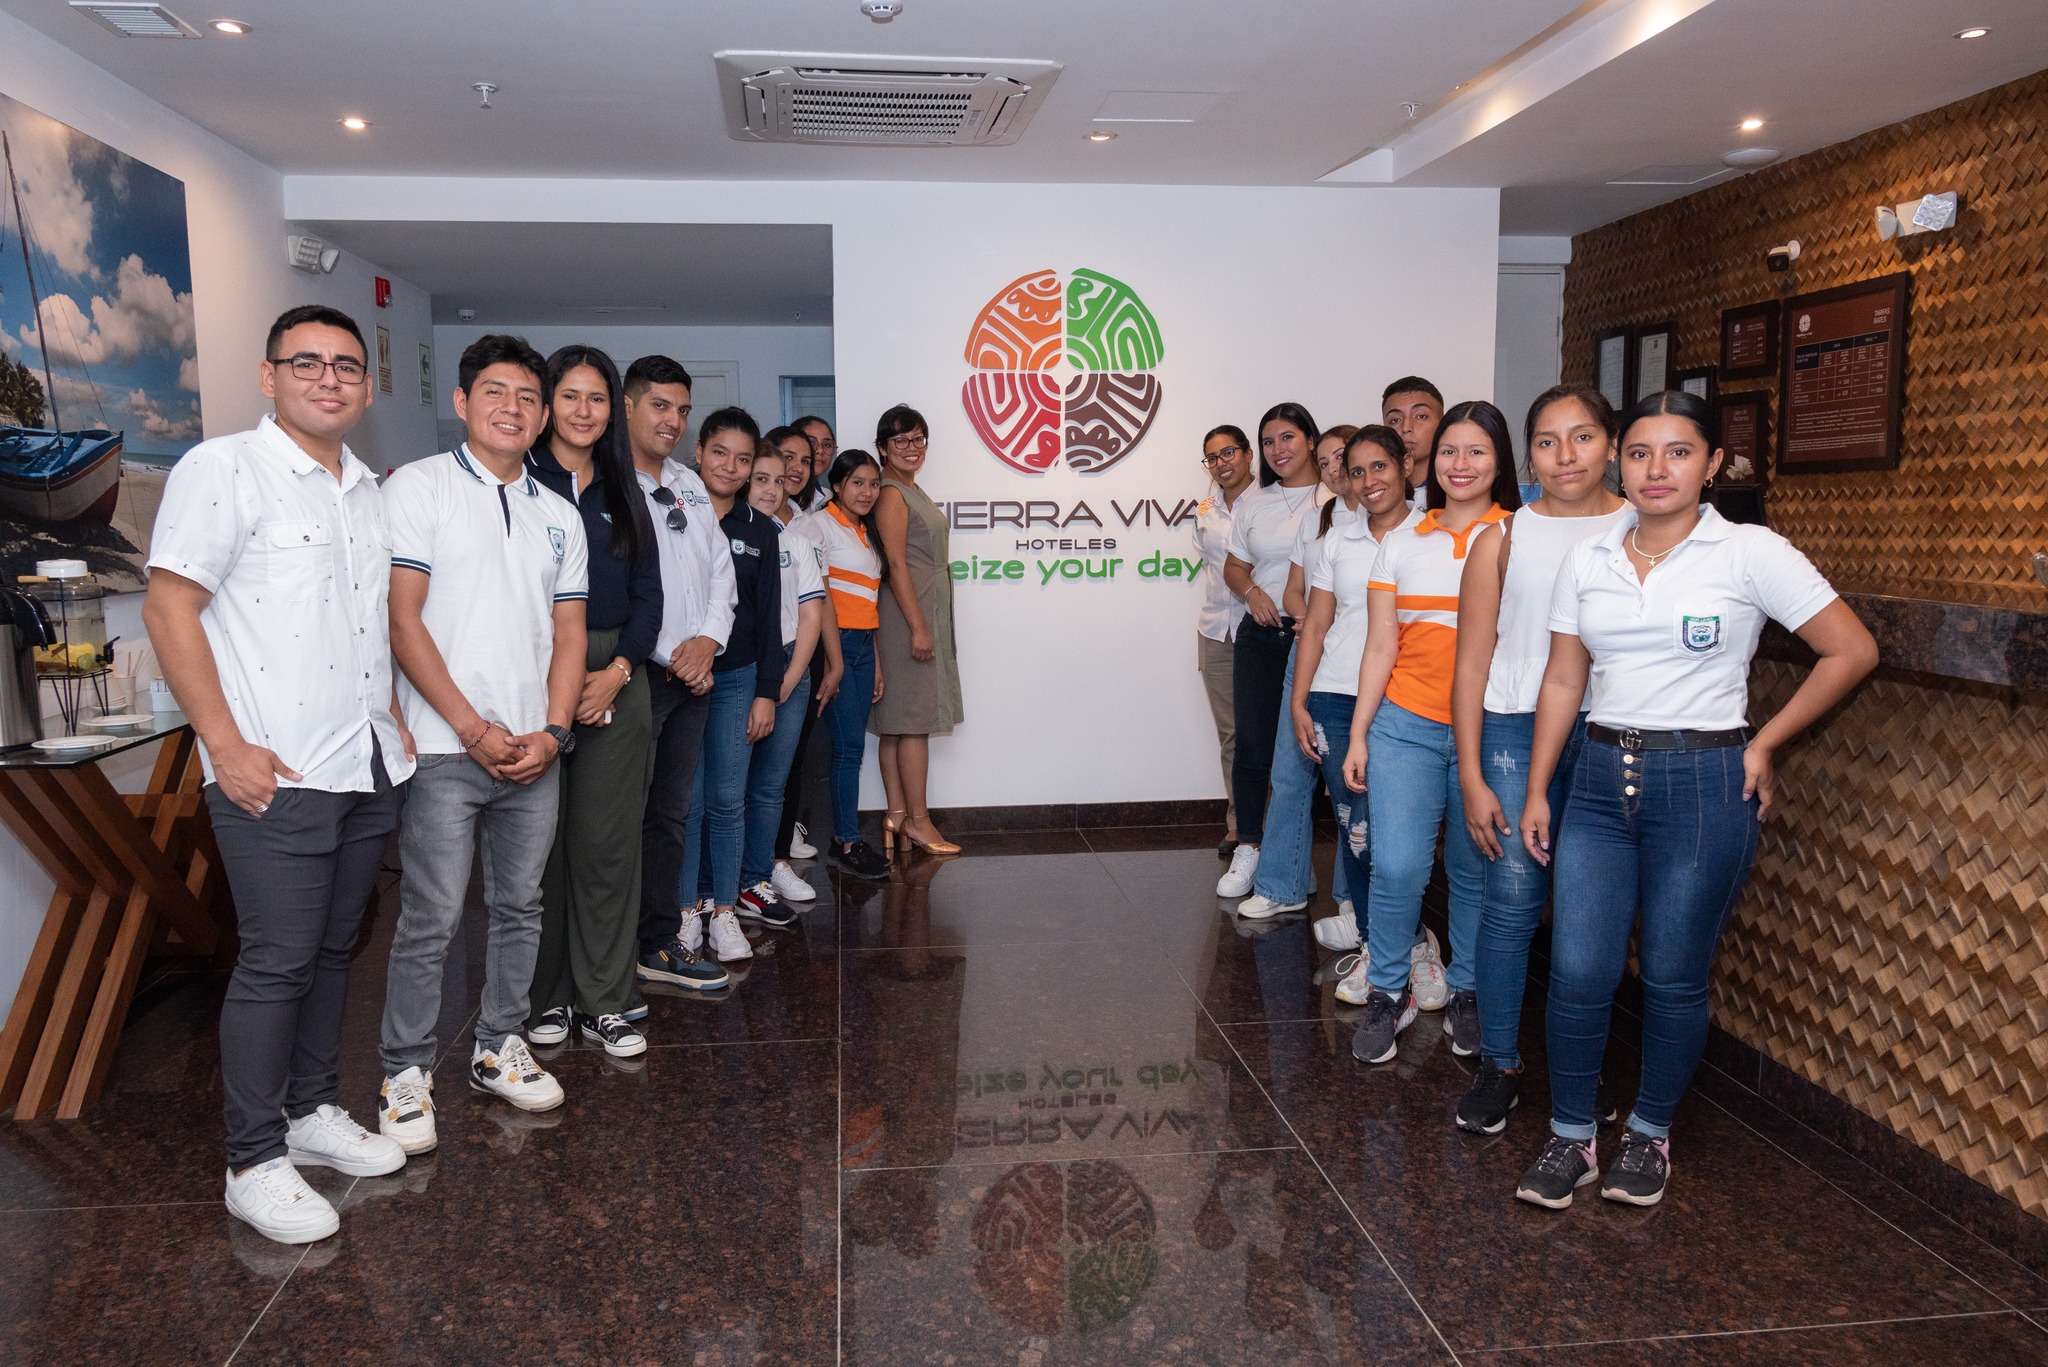 Estudiantes de Administración Hotelera y de Turismo realizan aprendizaje experiencial en interacción con el staff operativo de hoteles tierra viva de Piura